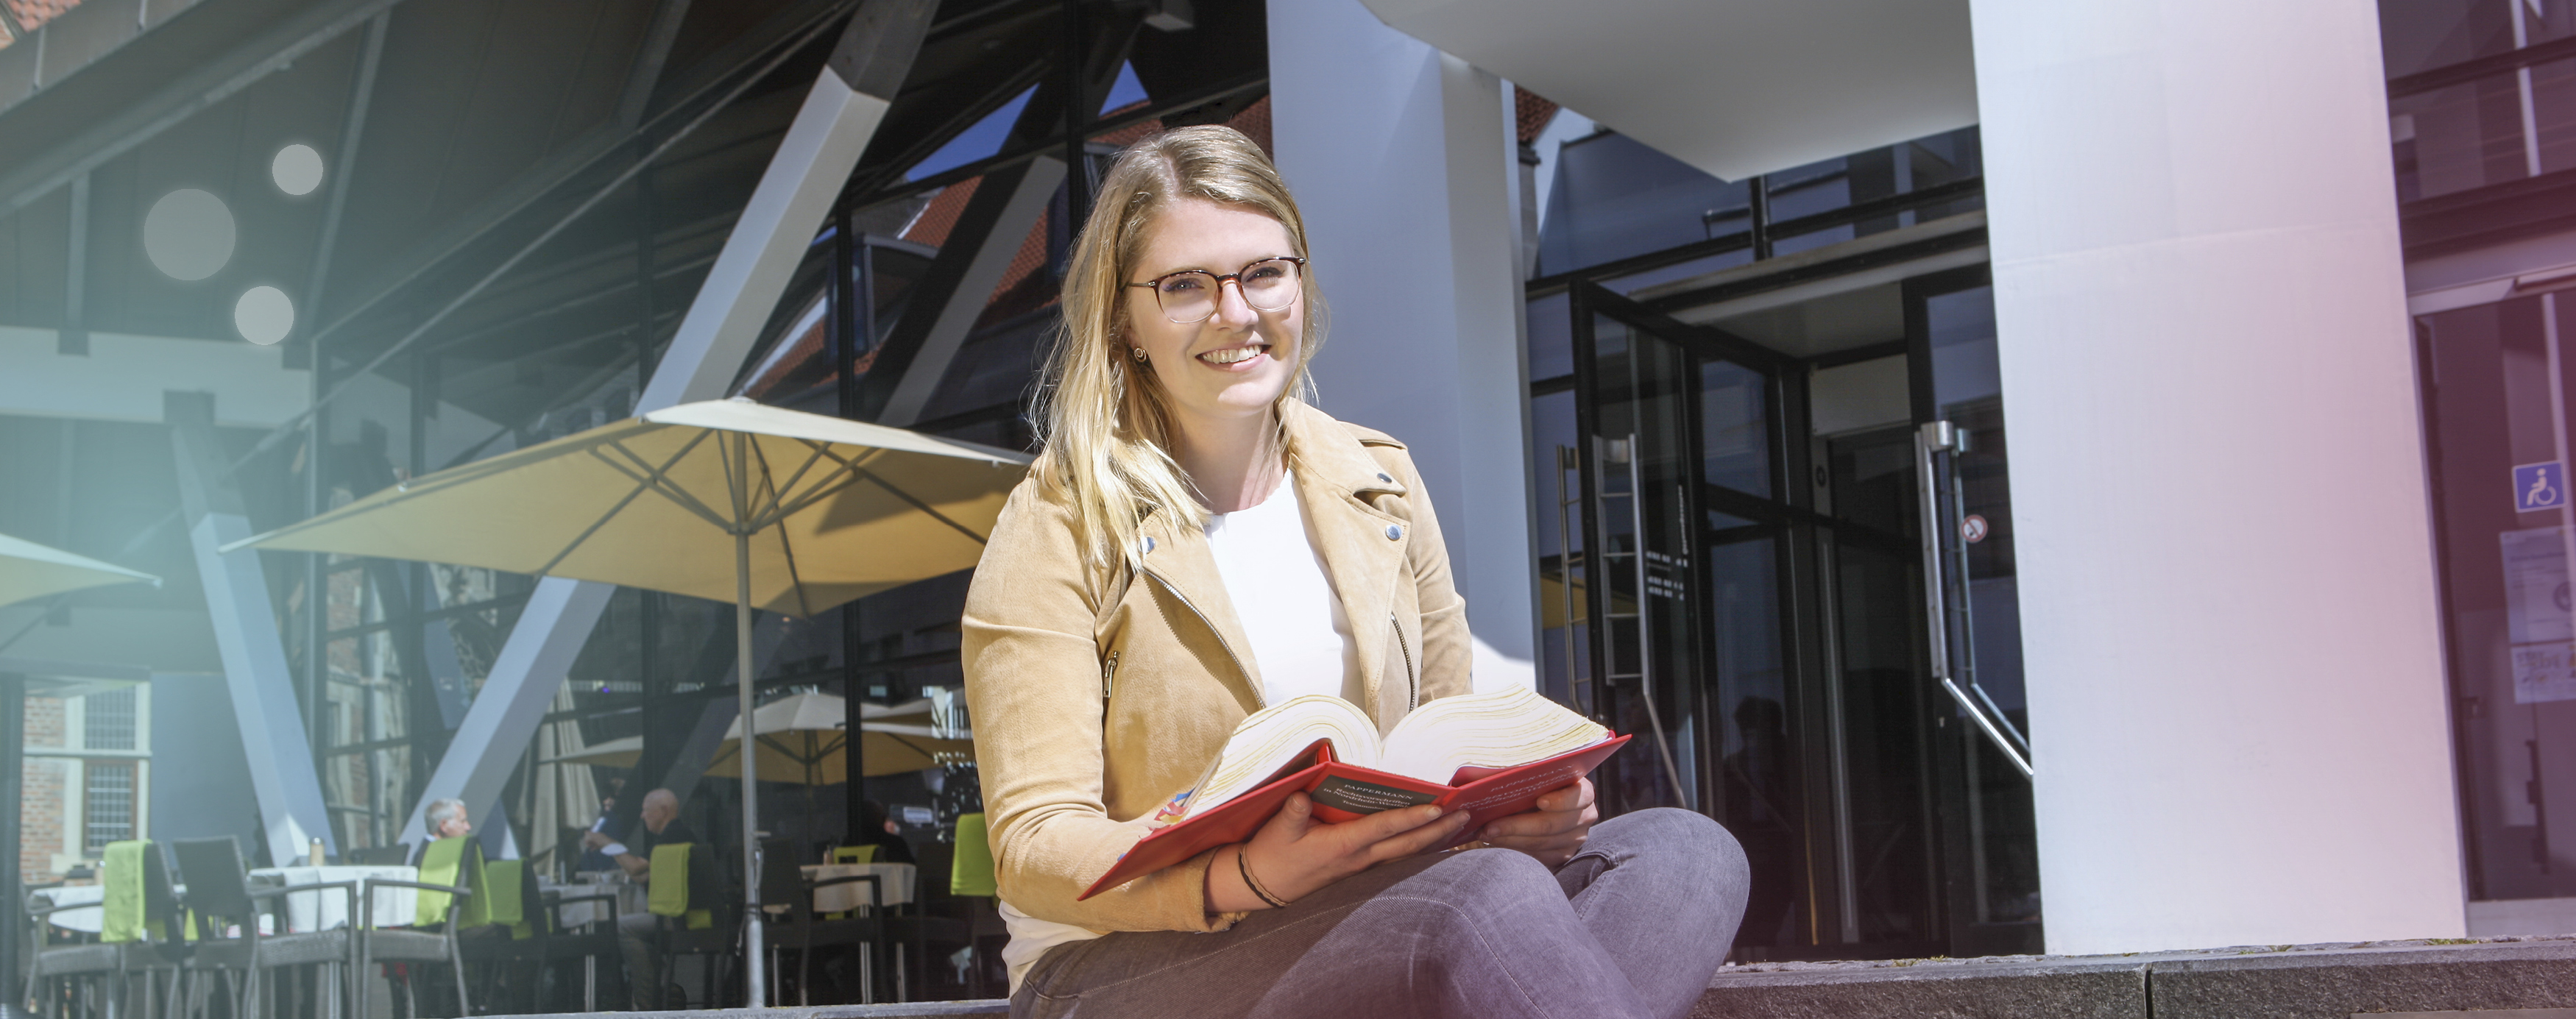 Eine blonde Frau sitzt auf der Treppe der Stadtbücherei Münster, schaut in die Kamera und blättert in einem Buch der Rechtsvorschriften.